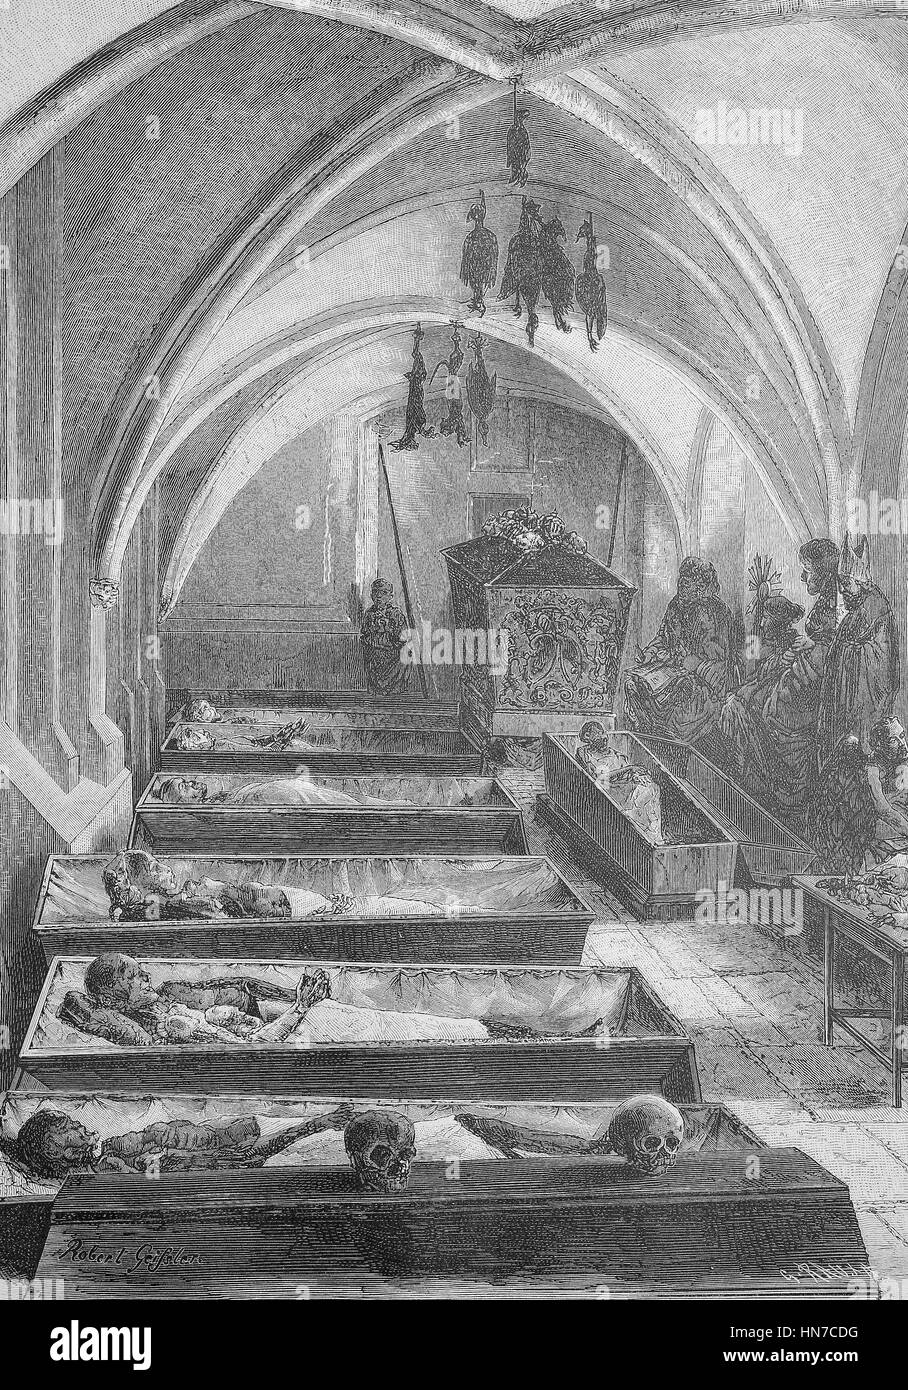 Le mummie nel seminterrato della Cattedrale di Brema, Germania, chiamato Bleikeller, Der Bleikeller im Dom von Bremen mit Mumien, xilografia dal 1885, digitale migliorata Foto Stock